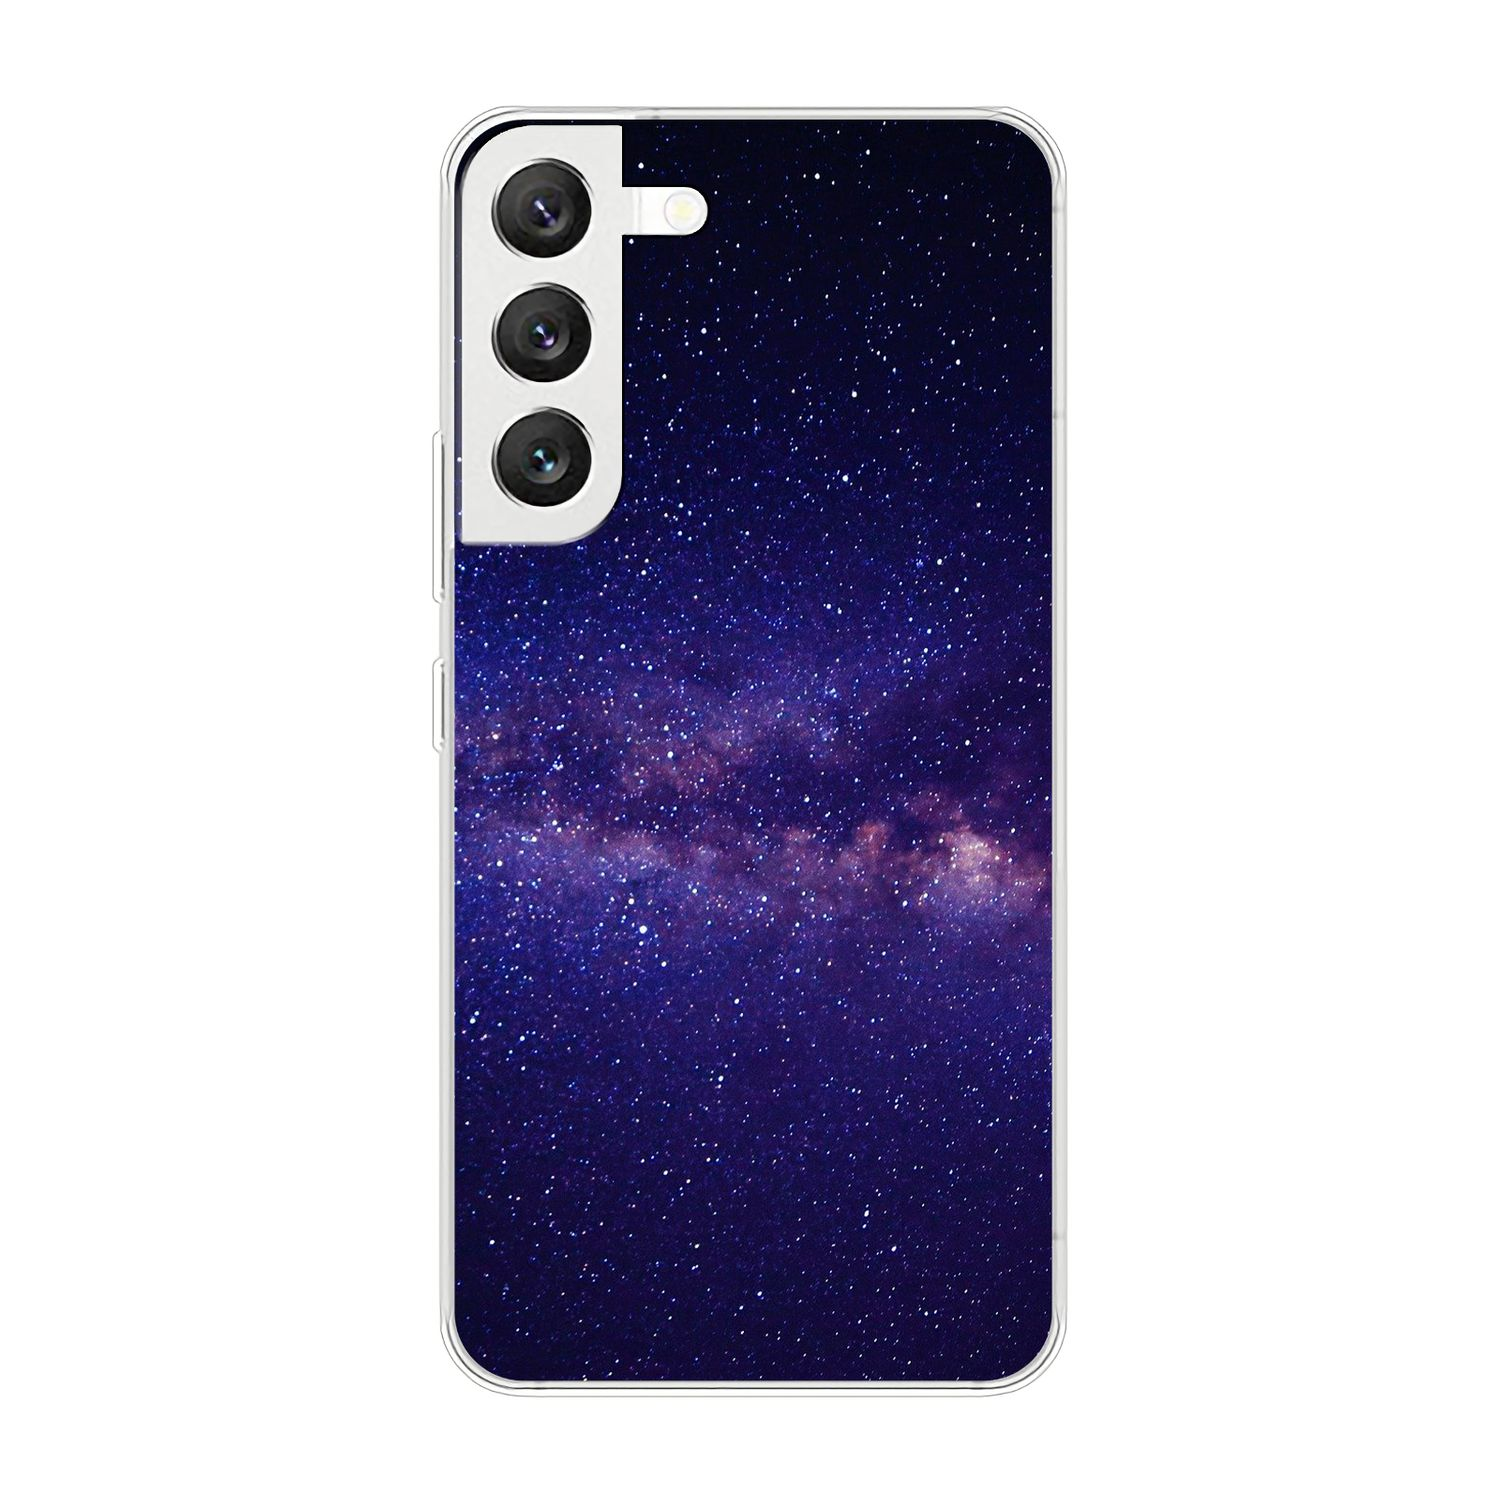 KÖNIG DESIGN S22 Samsung, Sternenhimmel 5G, Galaxy Case, Backcover